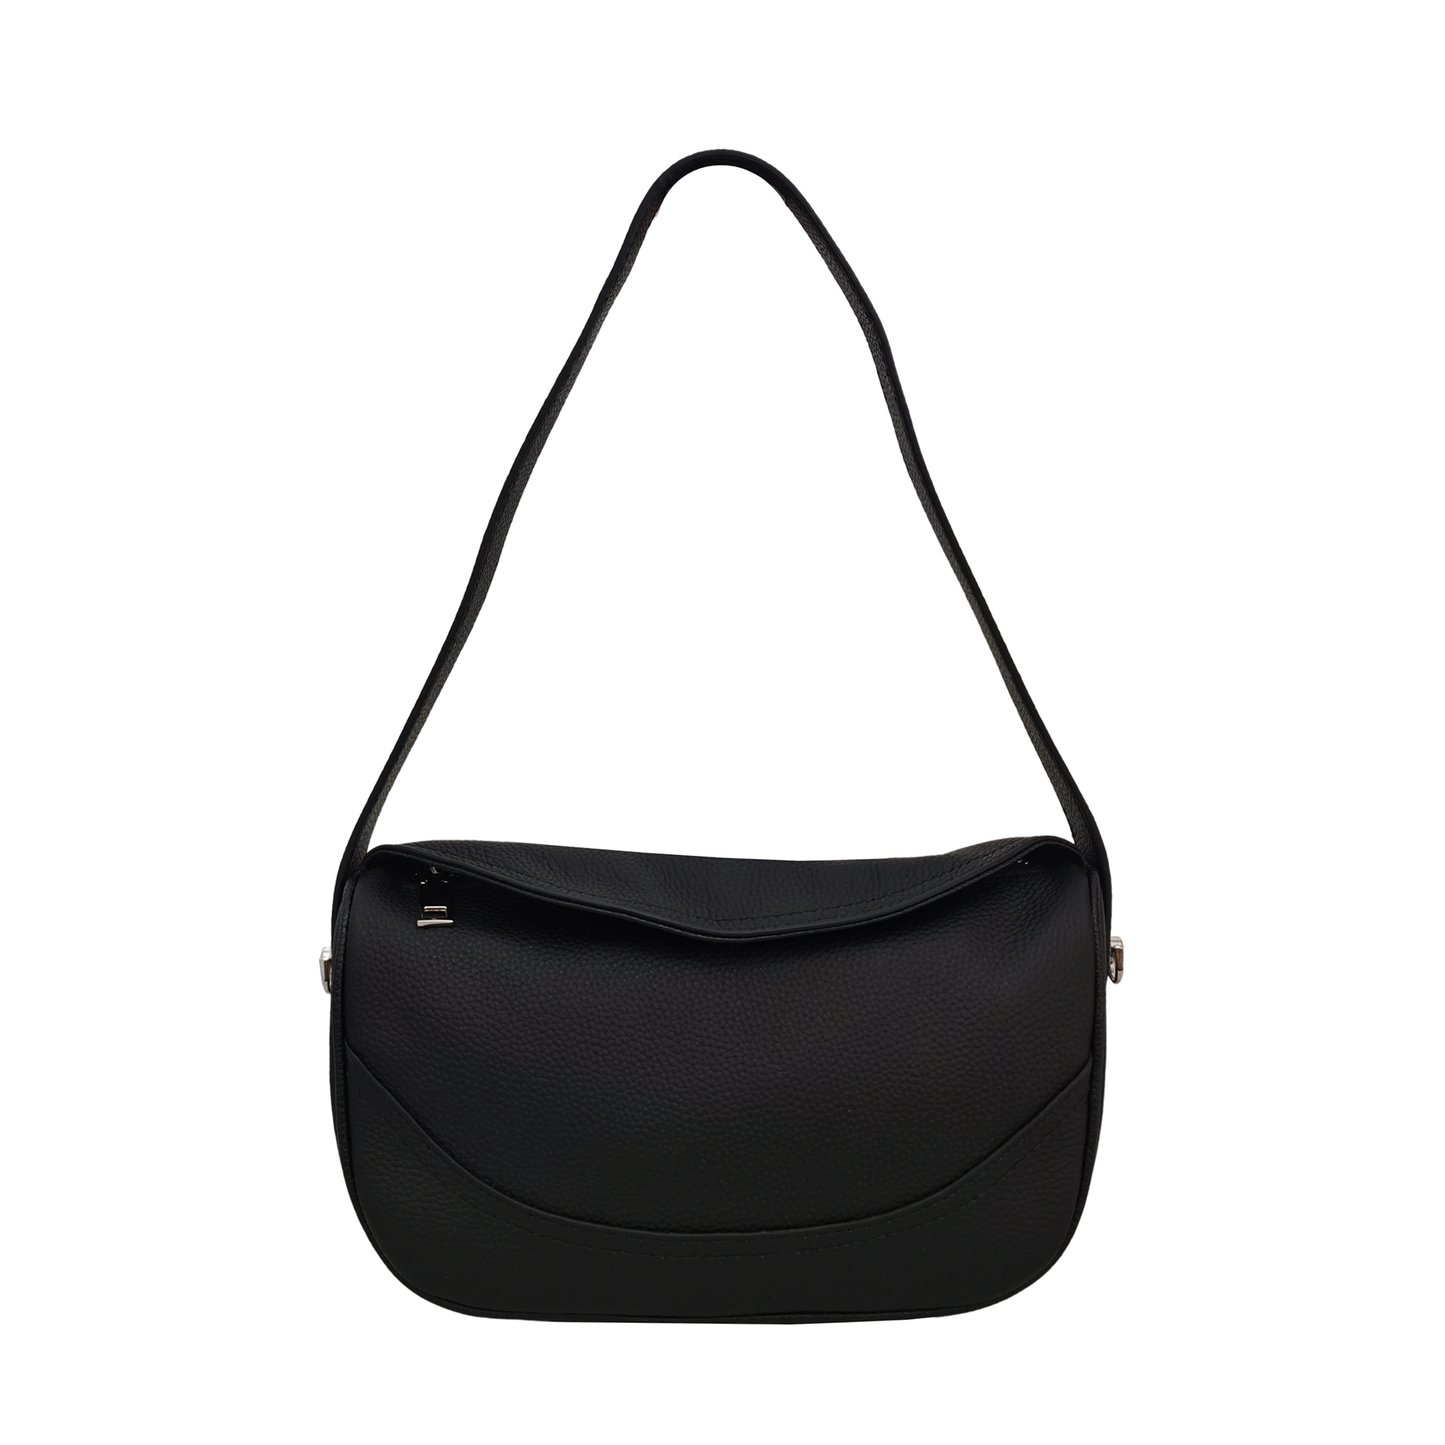 Women's genuine cowhide leather handbag Ingot V3 design